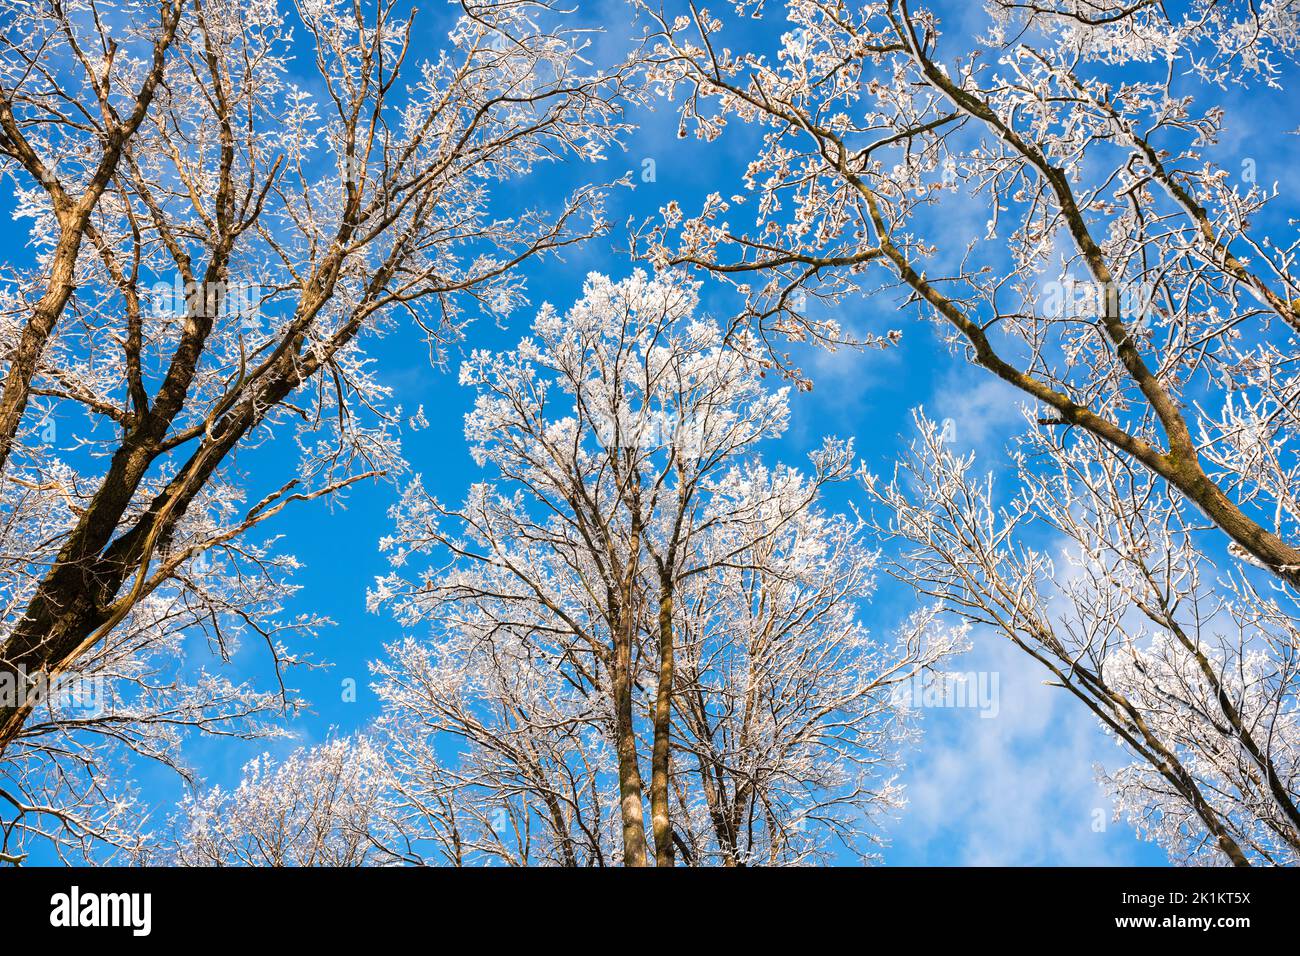 Vista inferior de un invierno nevado árboles en el cielo azul. Ramas heladas con ramitas de escarcha en un día soleado. Fotografía de paisajes Foto de stock